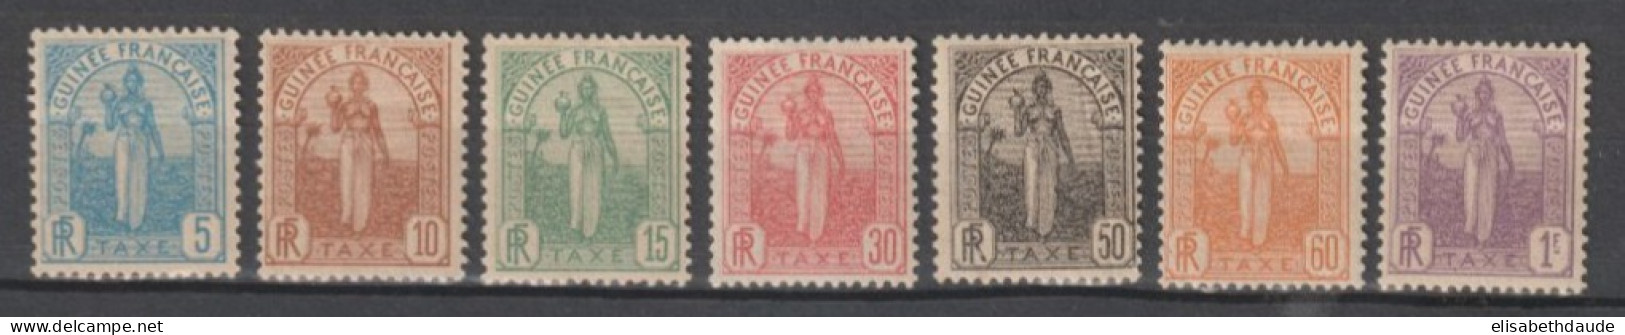 GUINEE - 1905 - SERIE TAXE COMPLETE YVERT N°1/7 * MH - COTE = 106 EUR - Neufs